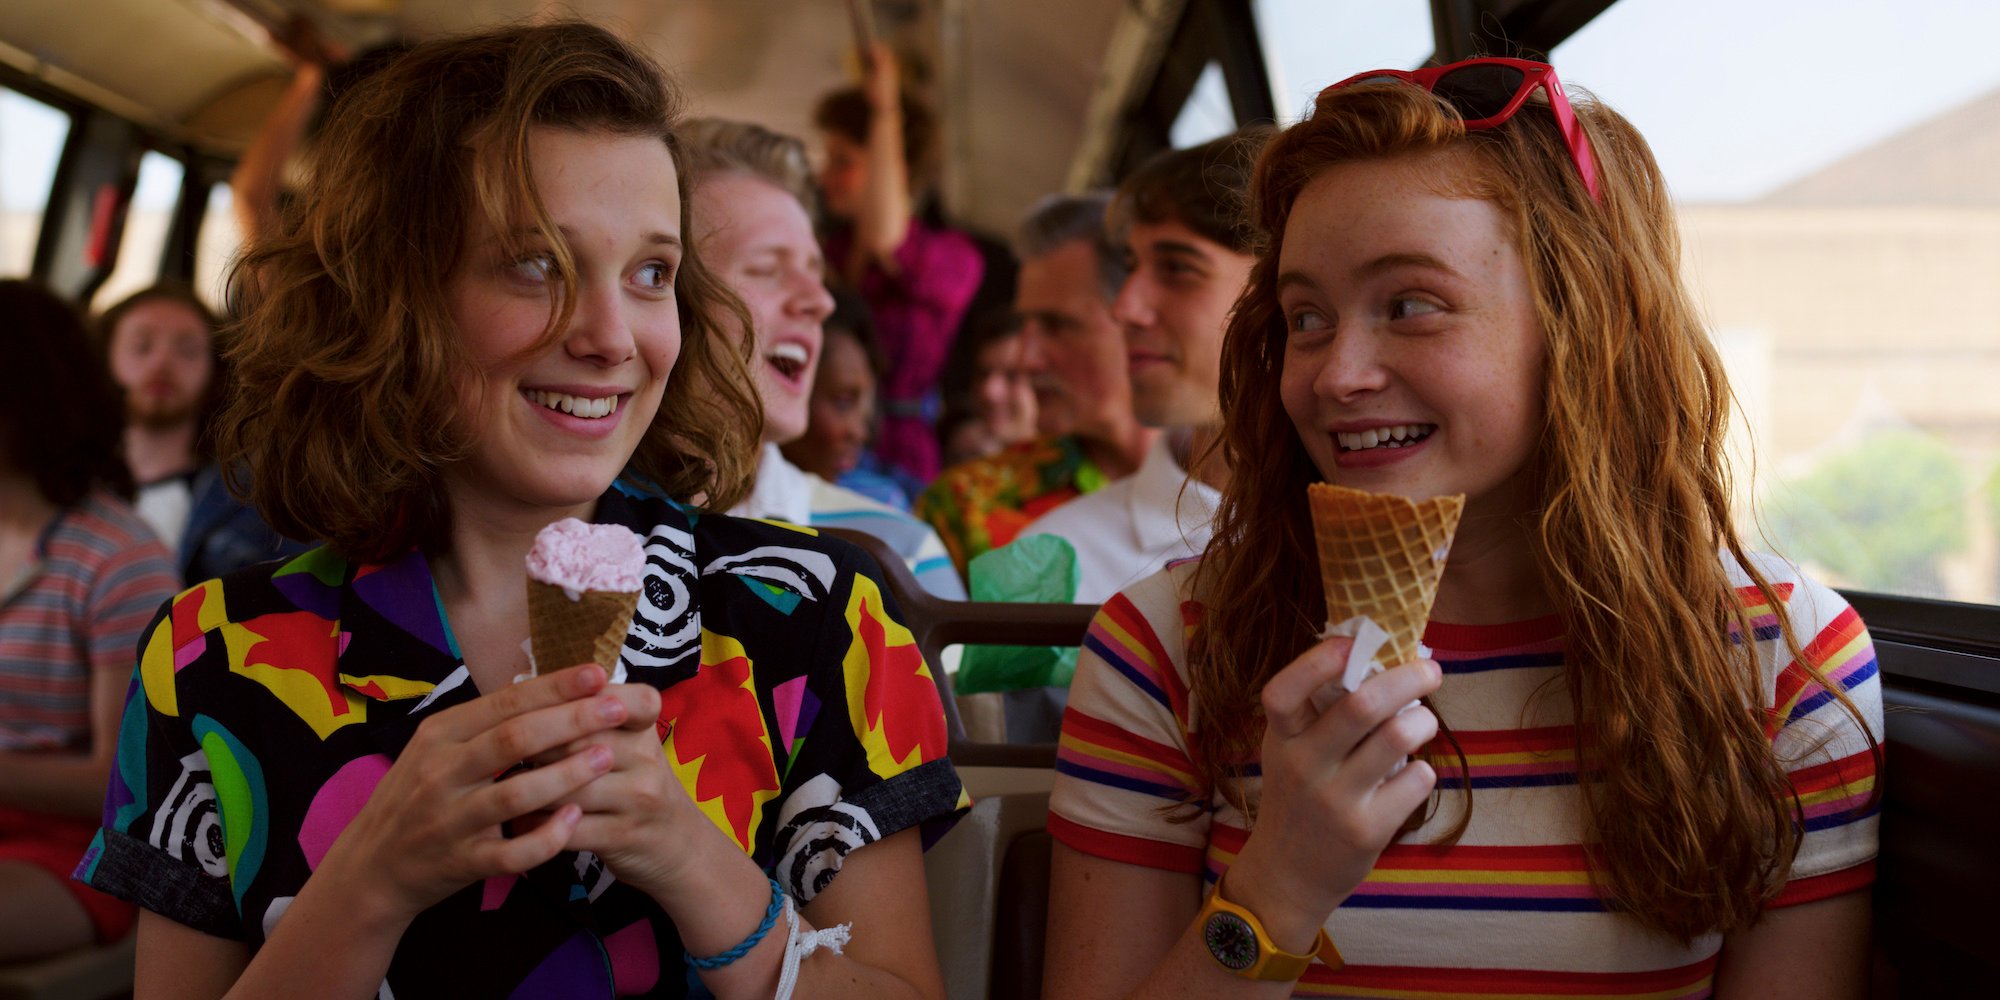 La saison 3 de Stranger Things se poursuit avec Eleven et Max assis dans le bus en train de manger des glaces.  La quatrième saison de Stranger Things n'a pas de date de sortie officielle.